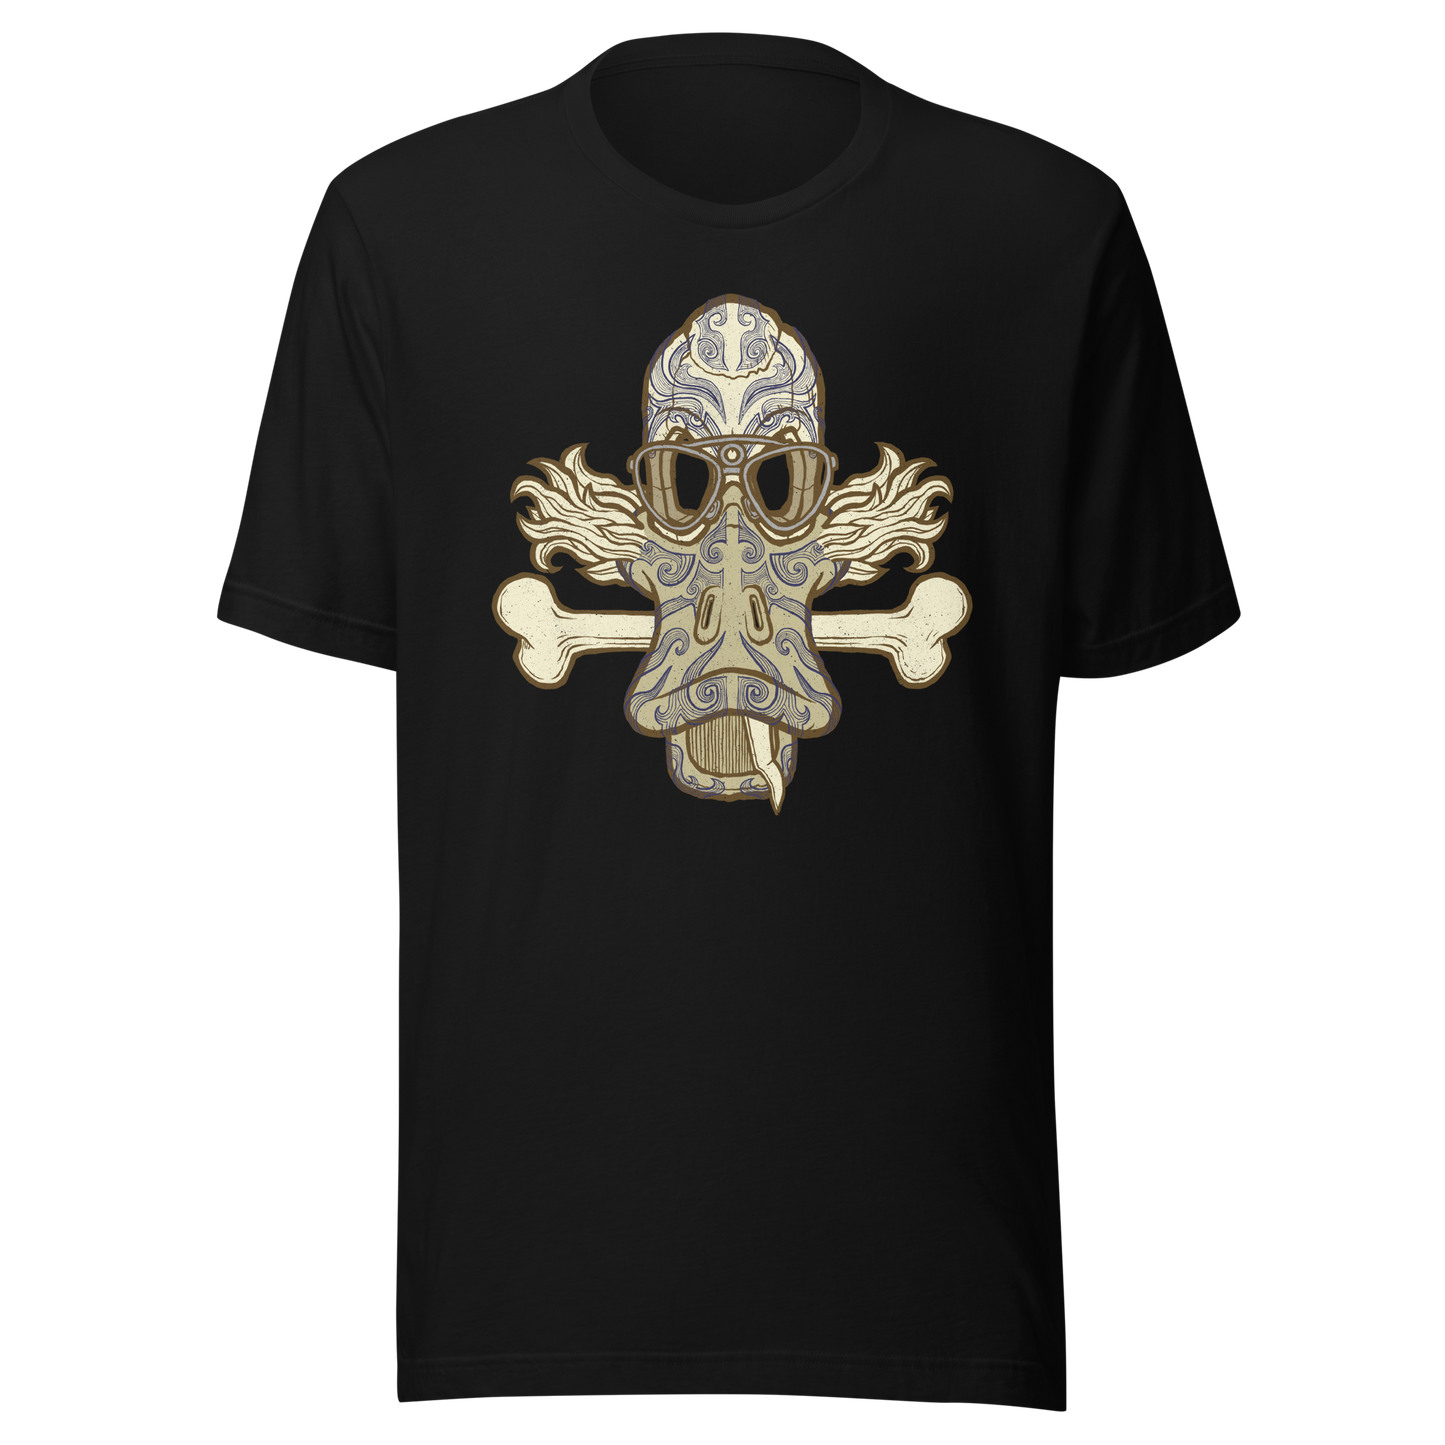 No 001 Wierd Duck Skull collection t-shirt